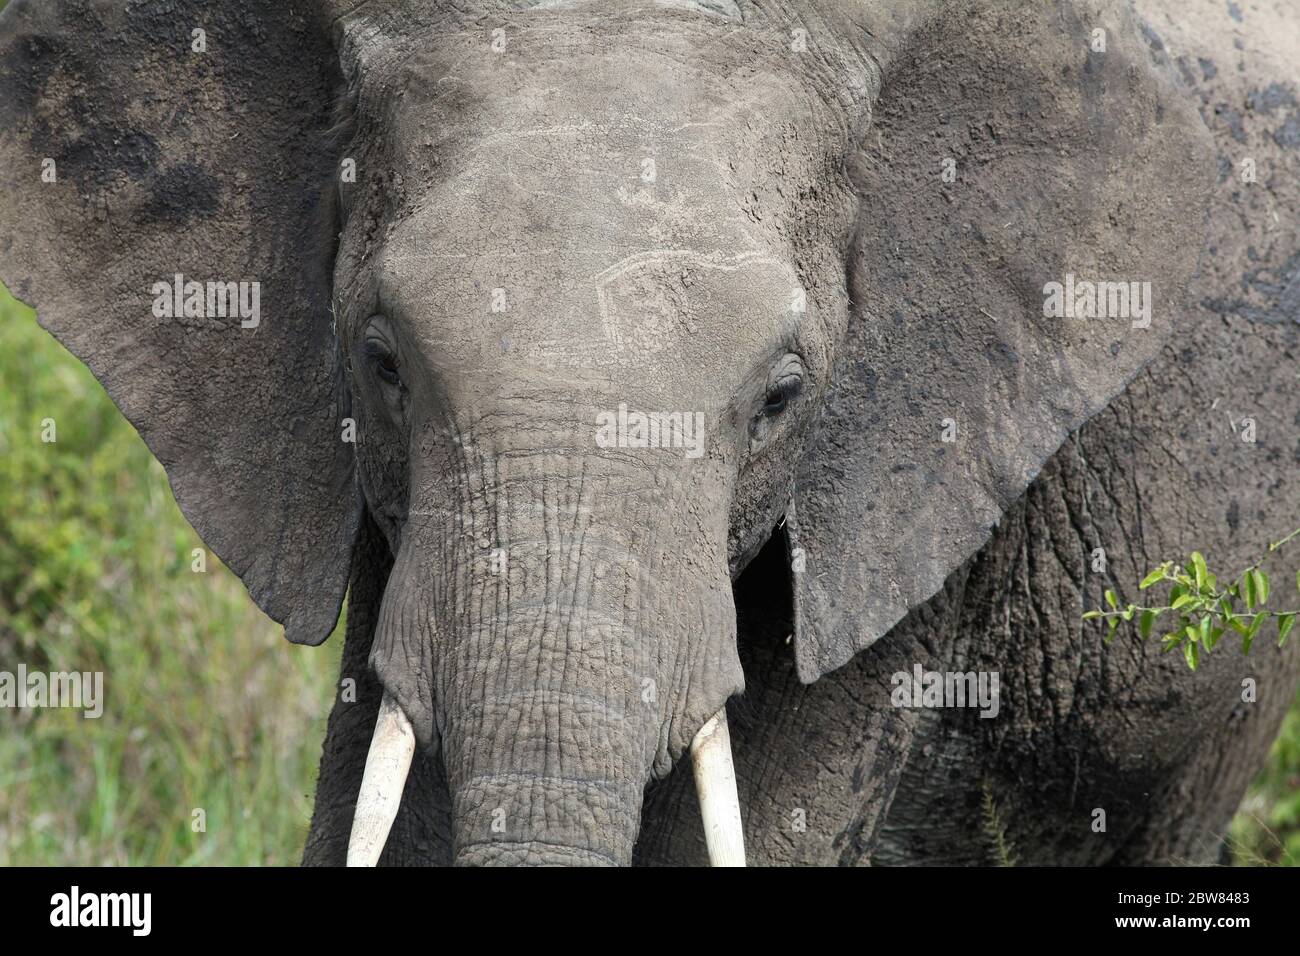 Ritratto di un giovane elefante con zanne corte e orecchie rialzate, vista frontale della testa, primo piano Foto Stock